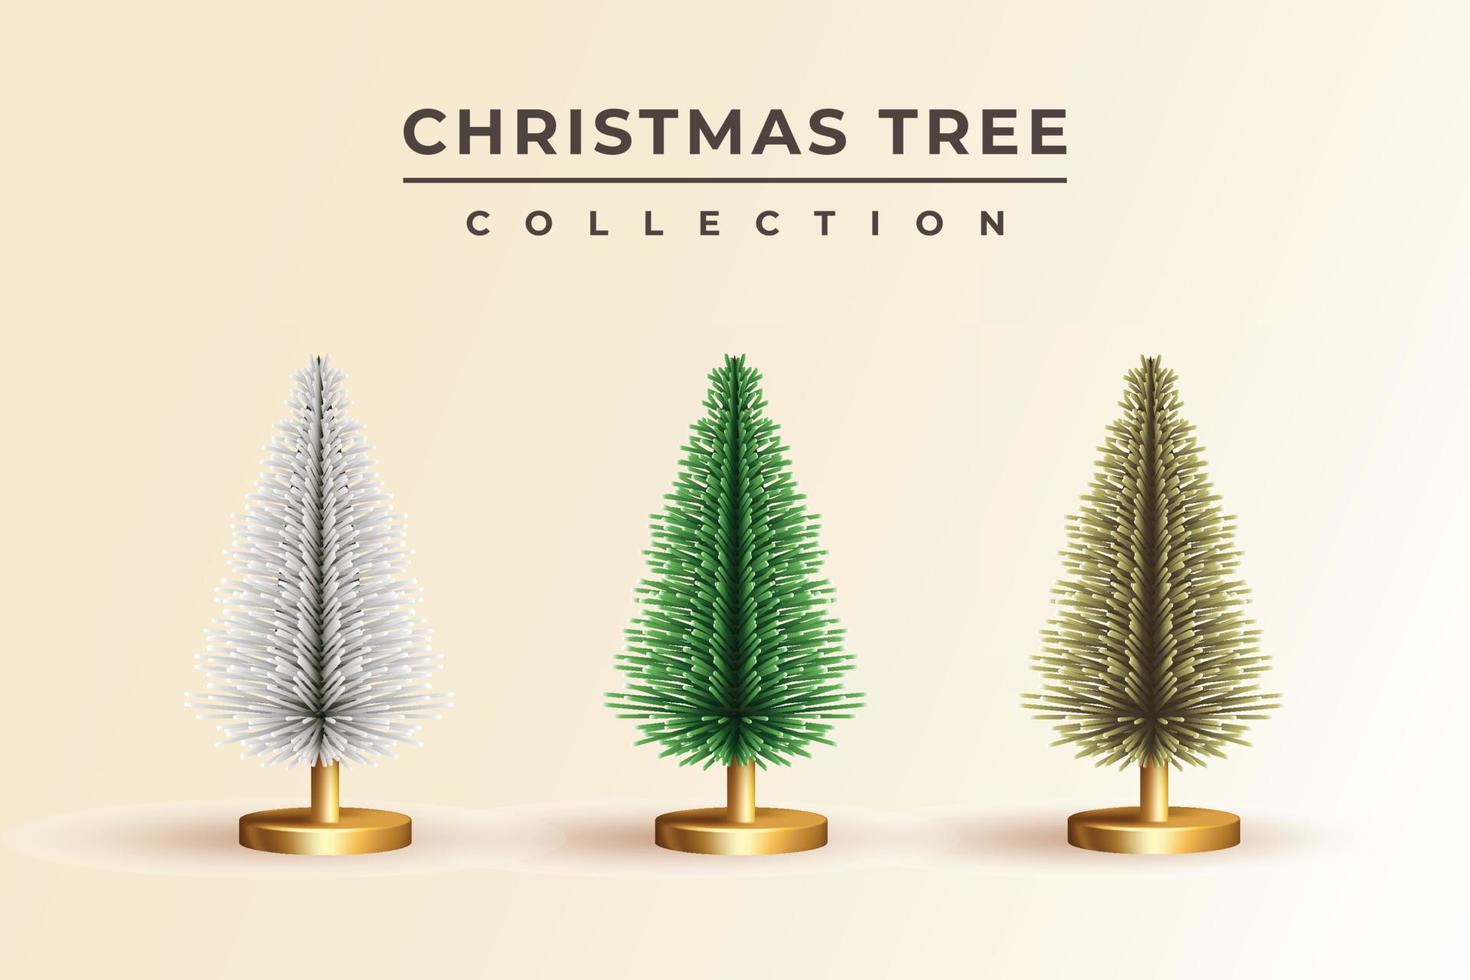 conception 3d réaliste de la collection d'arbres luxuriants de sapins de noël vecteur